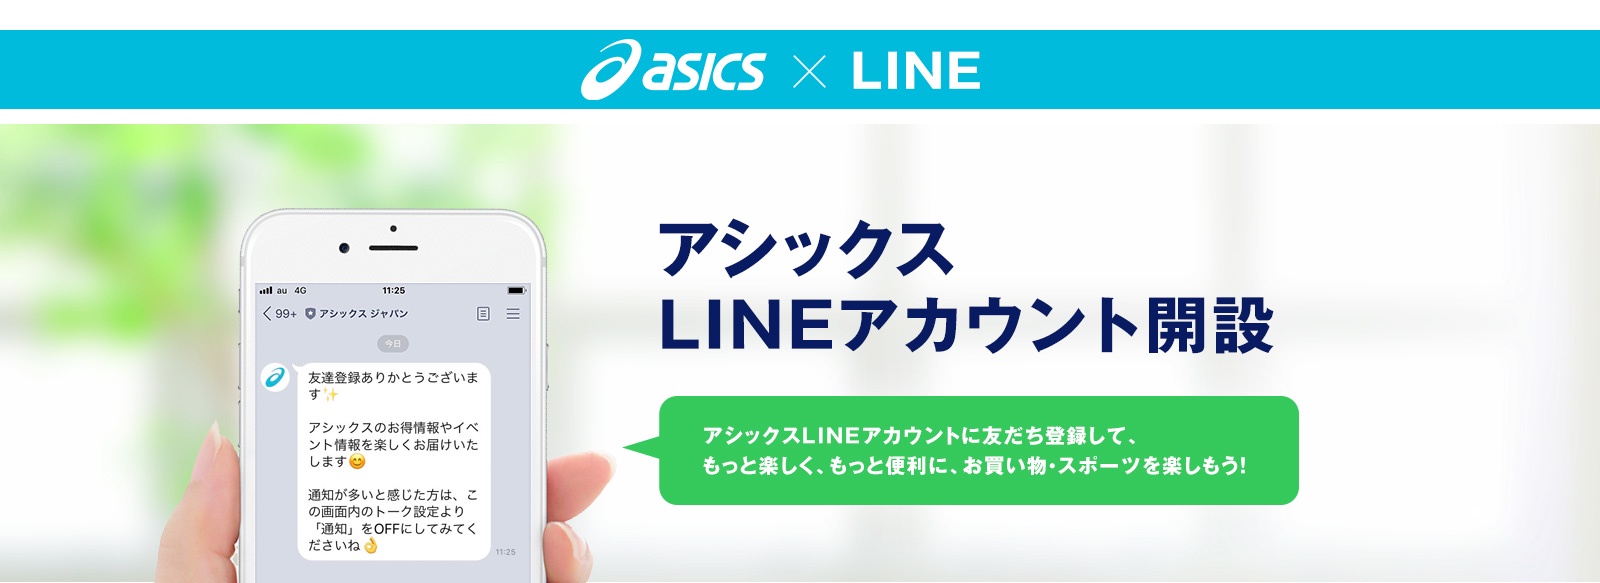 asics×LINE アシックス LINEアカウント開設 アシックスLINEアカウントに友だち登録して、もっと楽しく、もっと便利に、お買い物・スポーツを楽しもう！